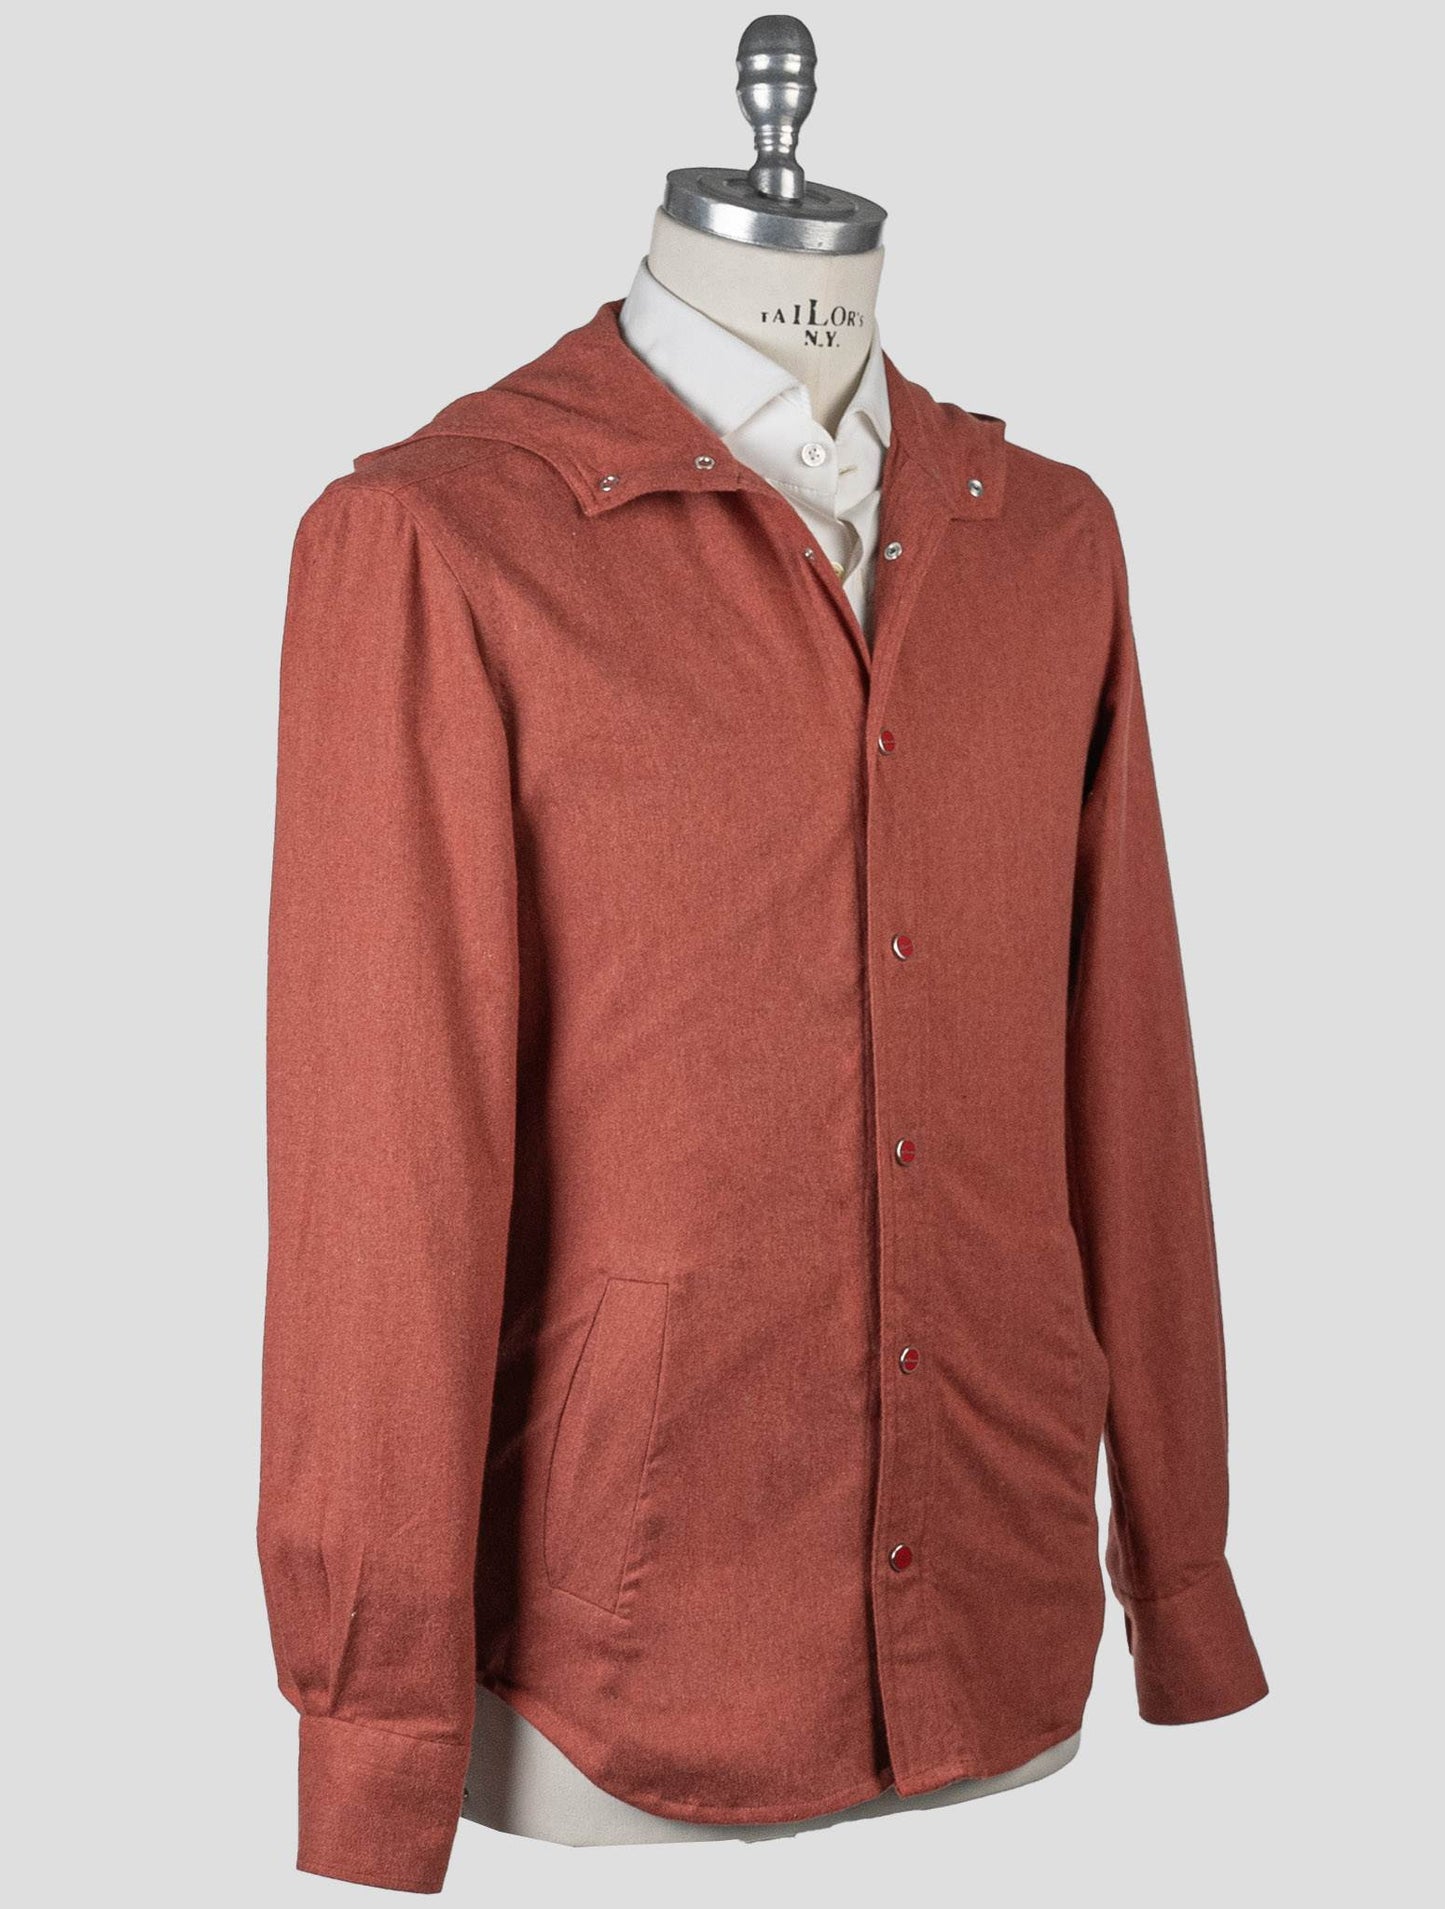 Camisa de algodón roja Kiton Mariano